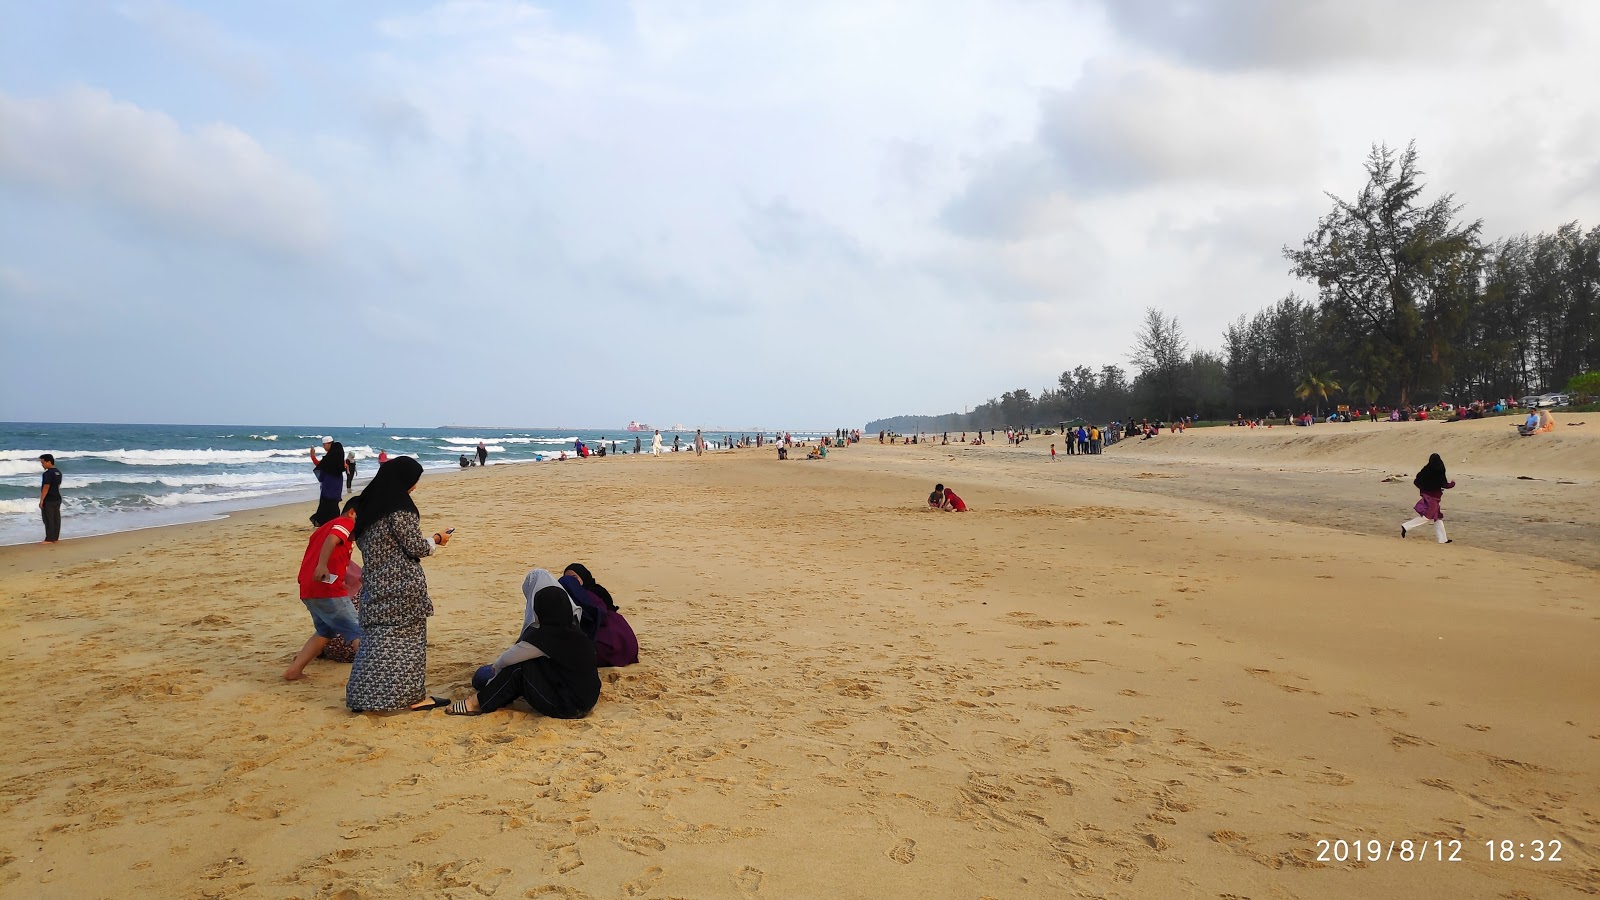 Fotografie cu Petak Beach cu nivelul de curățenie in medie